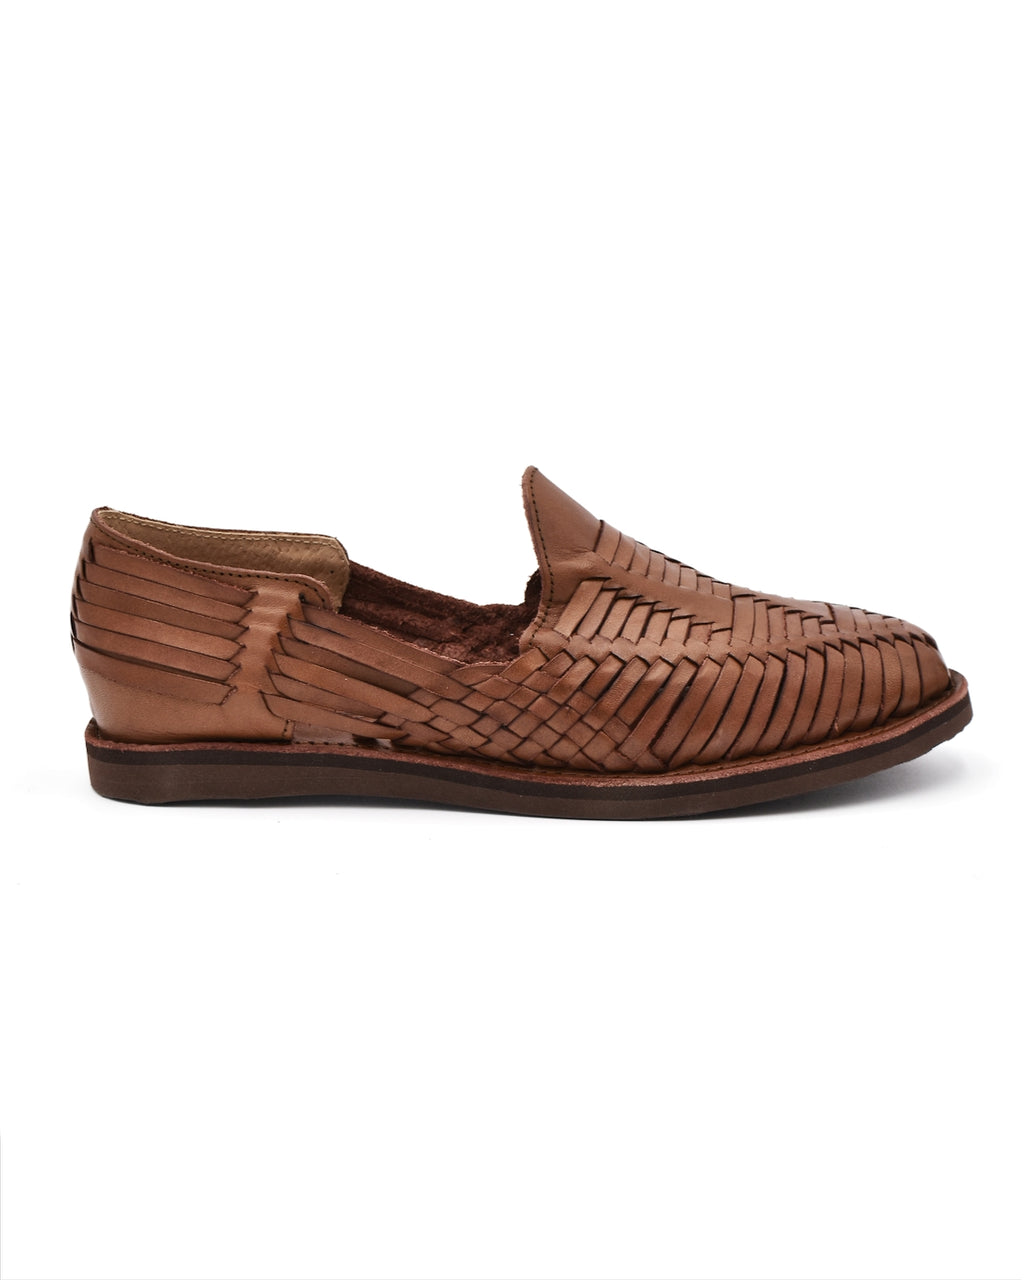 Chamula Cancun Brown Woven Huarache Sandal